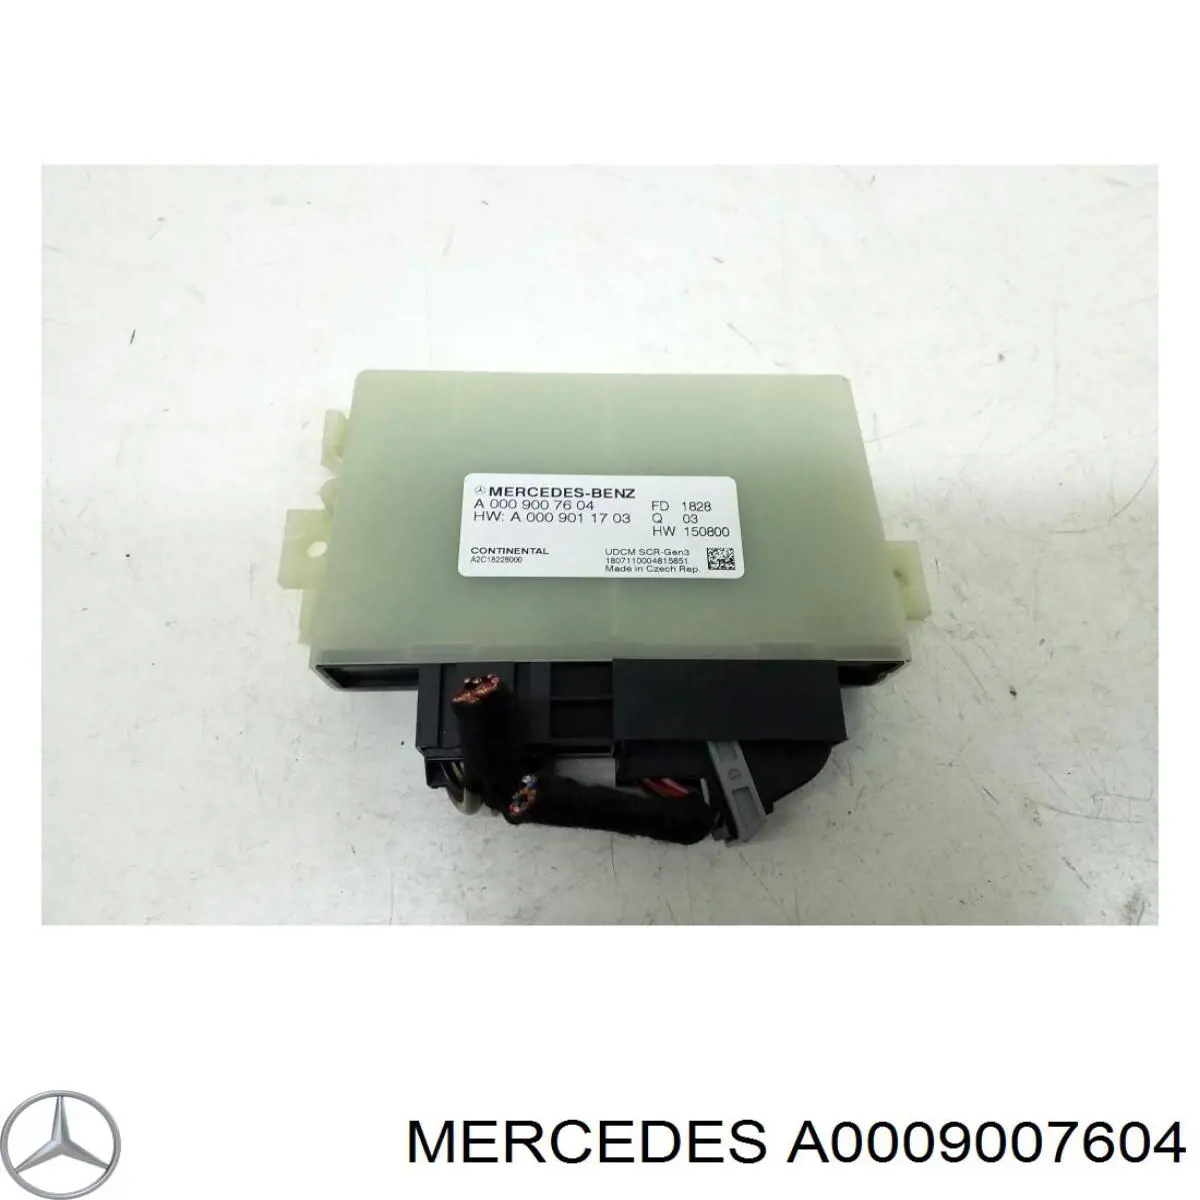 A0009007604 Mercedes unidad de control adblue